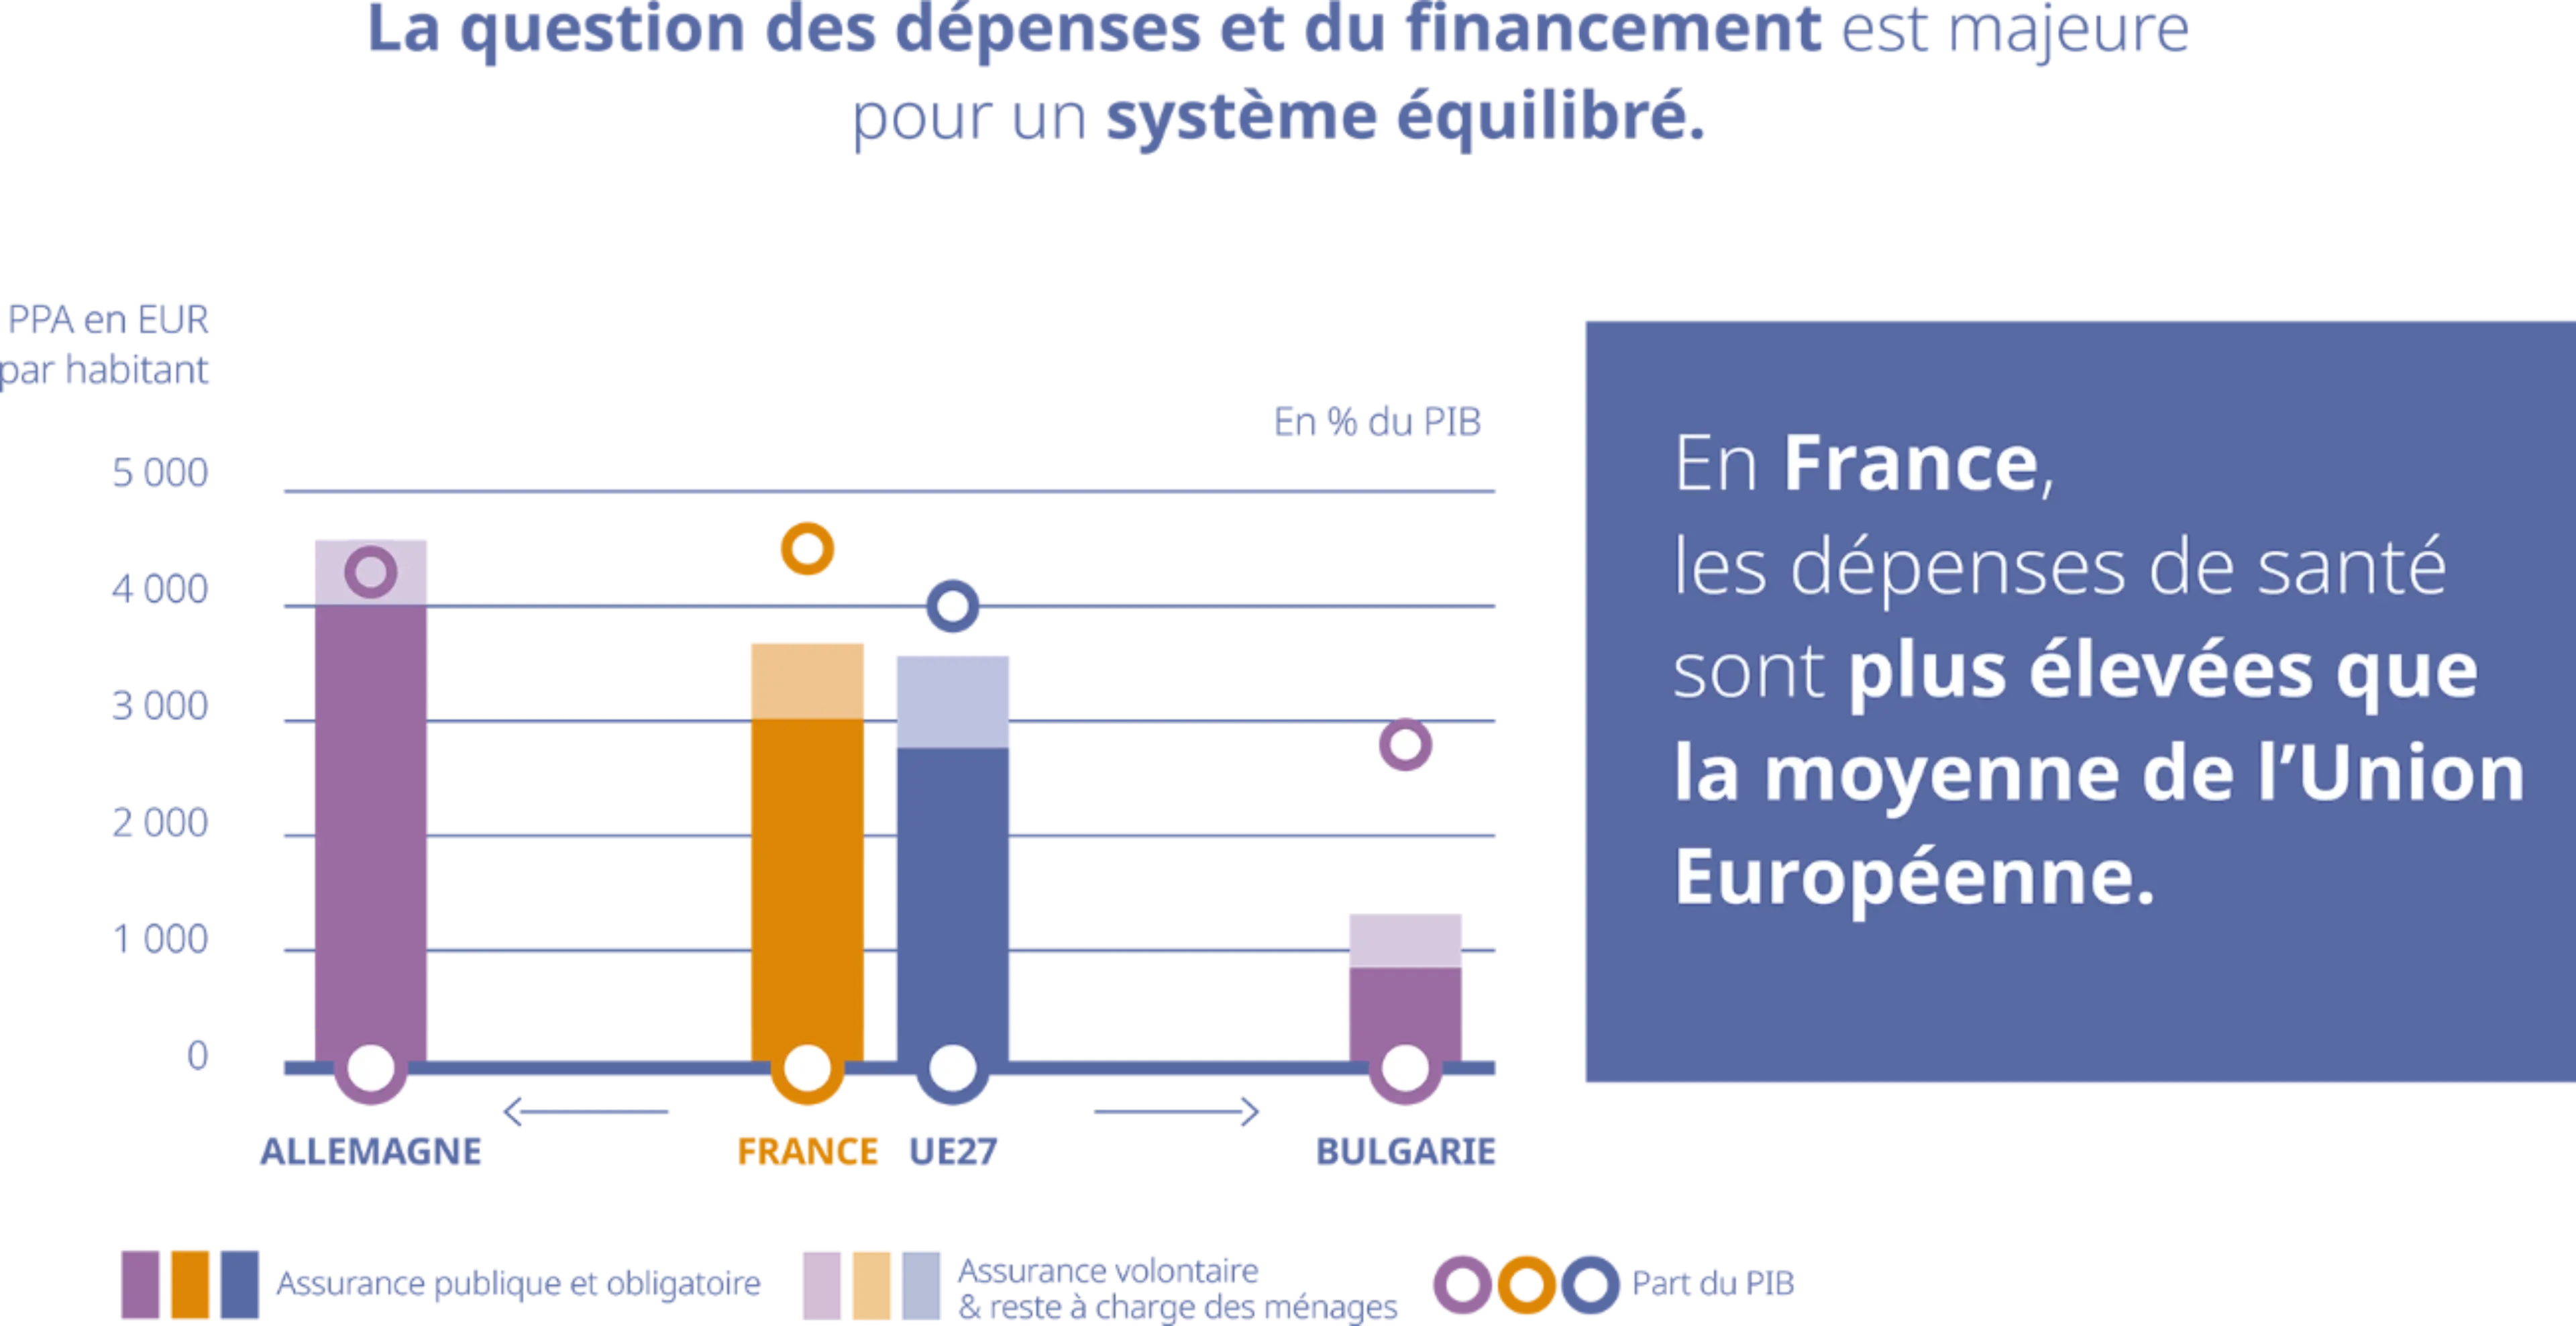 En France, les dépenses de santé sont plus élevées que la moyenne de l’Union Européenne.